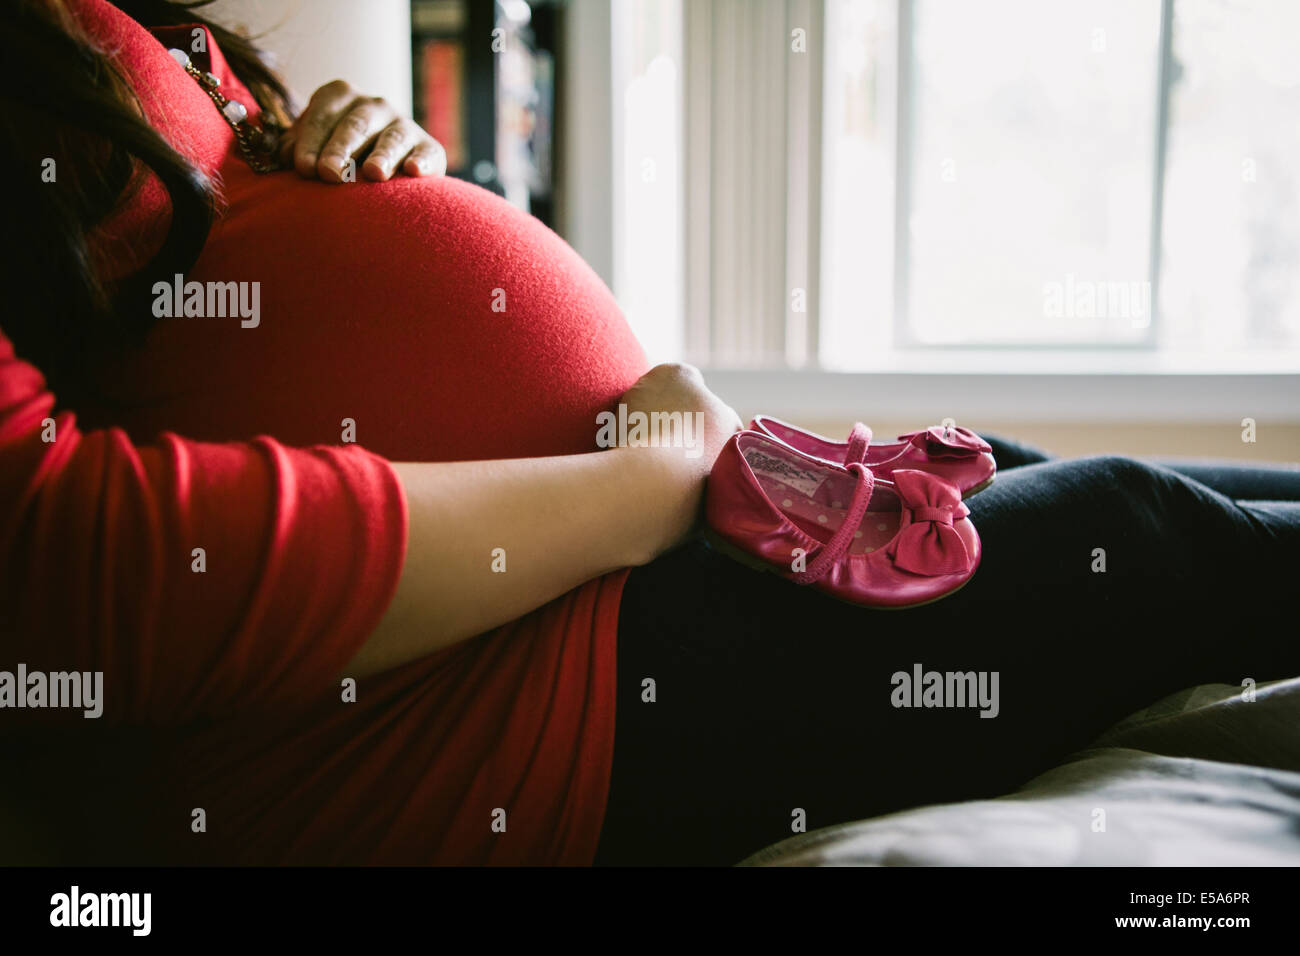 Asiatische Frau hält ihren schwangeren Bauch Stockfoto